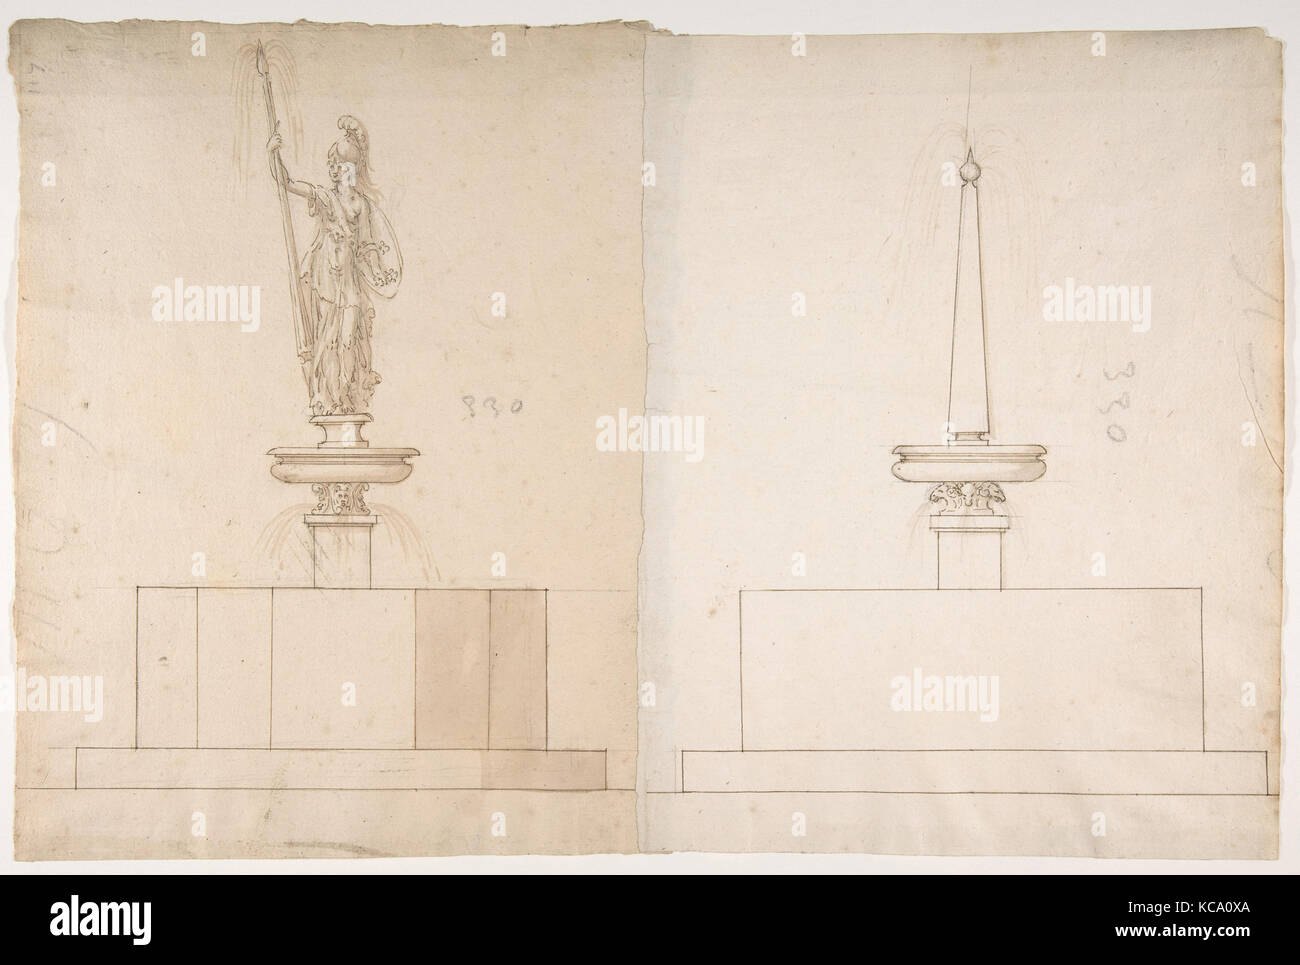 Les plans et les élévations de deux fontaines, anonyme, le français, 16e siècle Banque D'Images